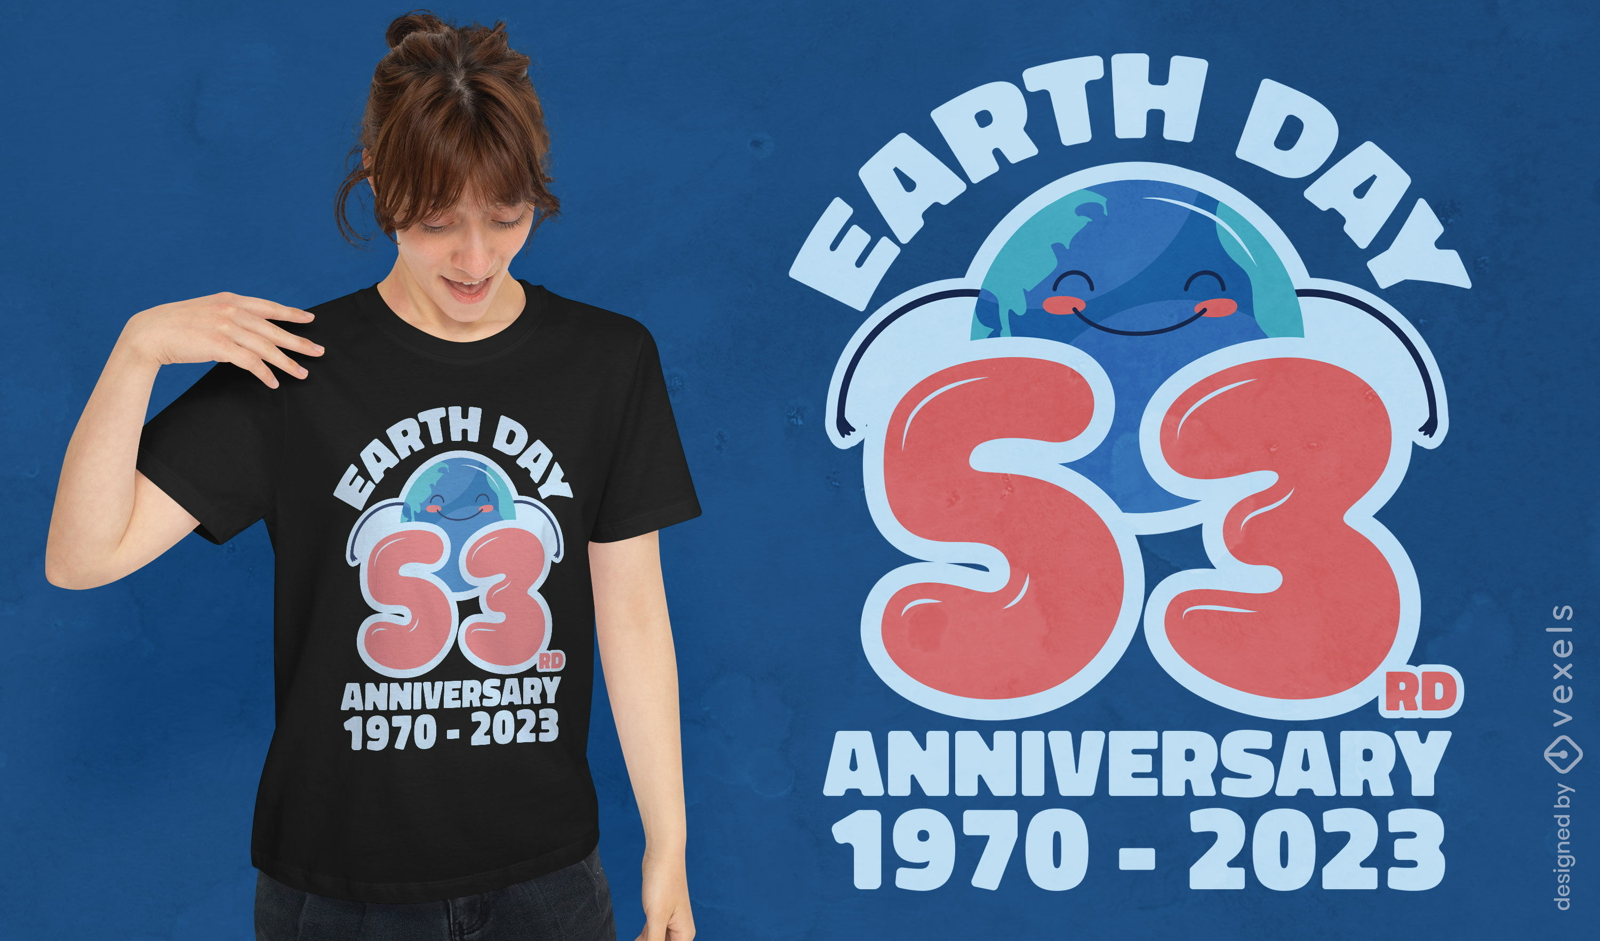 Dise?o de camiseta del 53 aniversario de la Tierra.